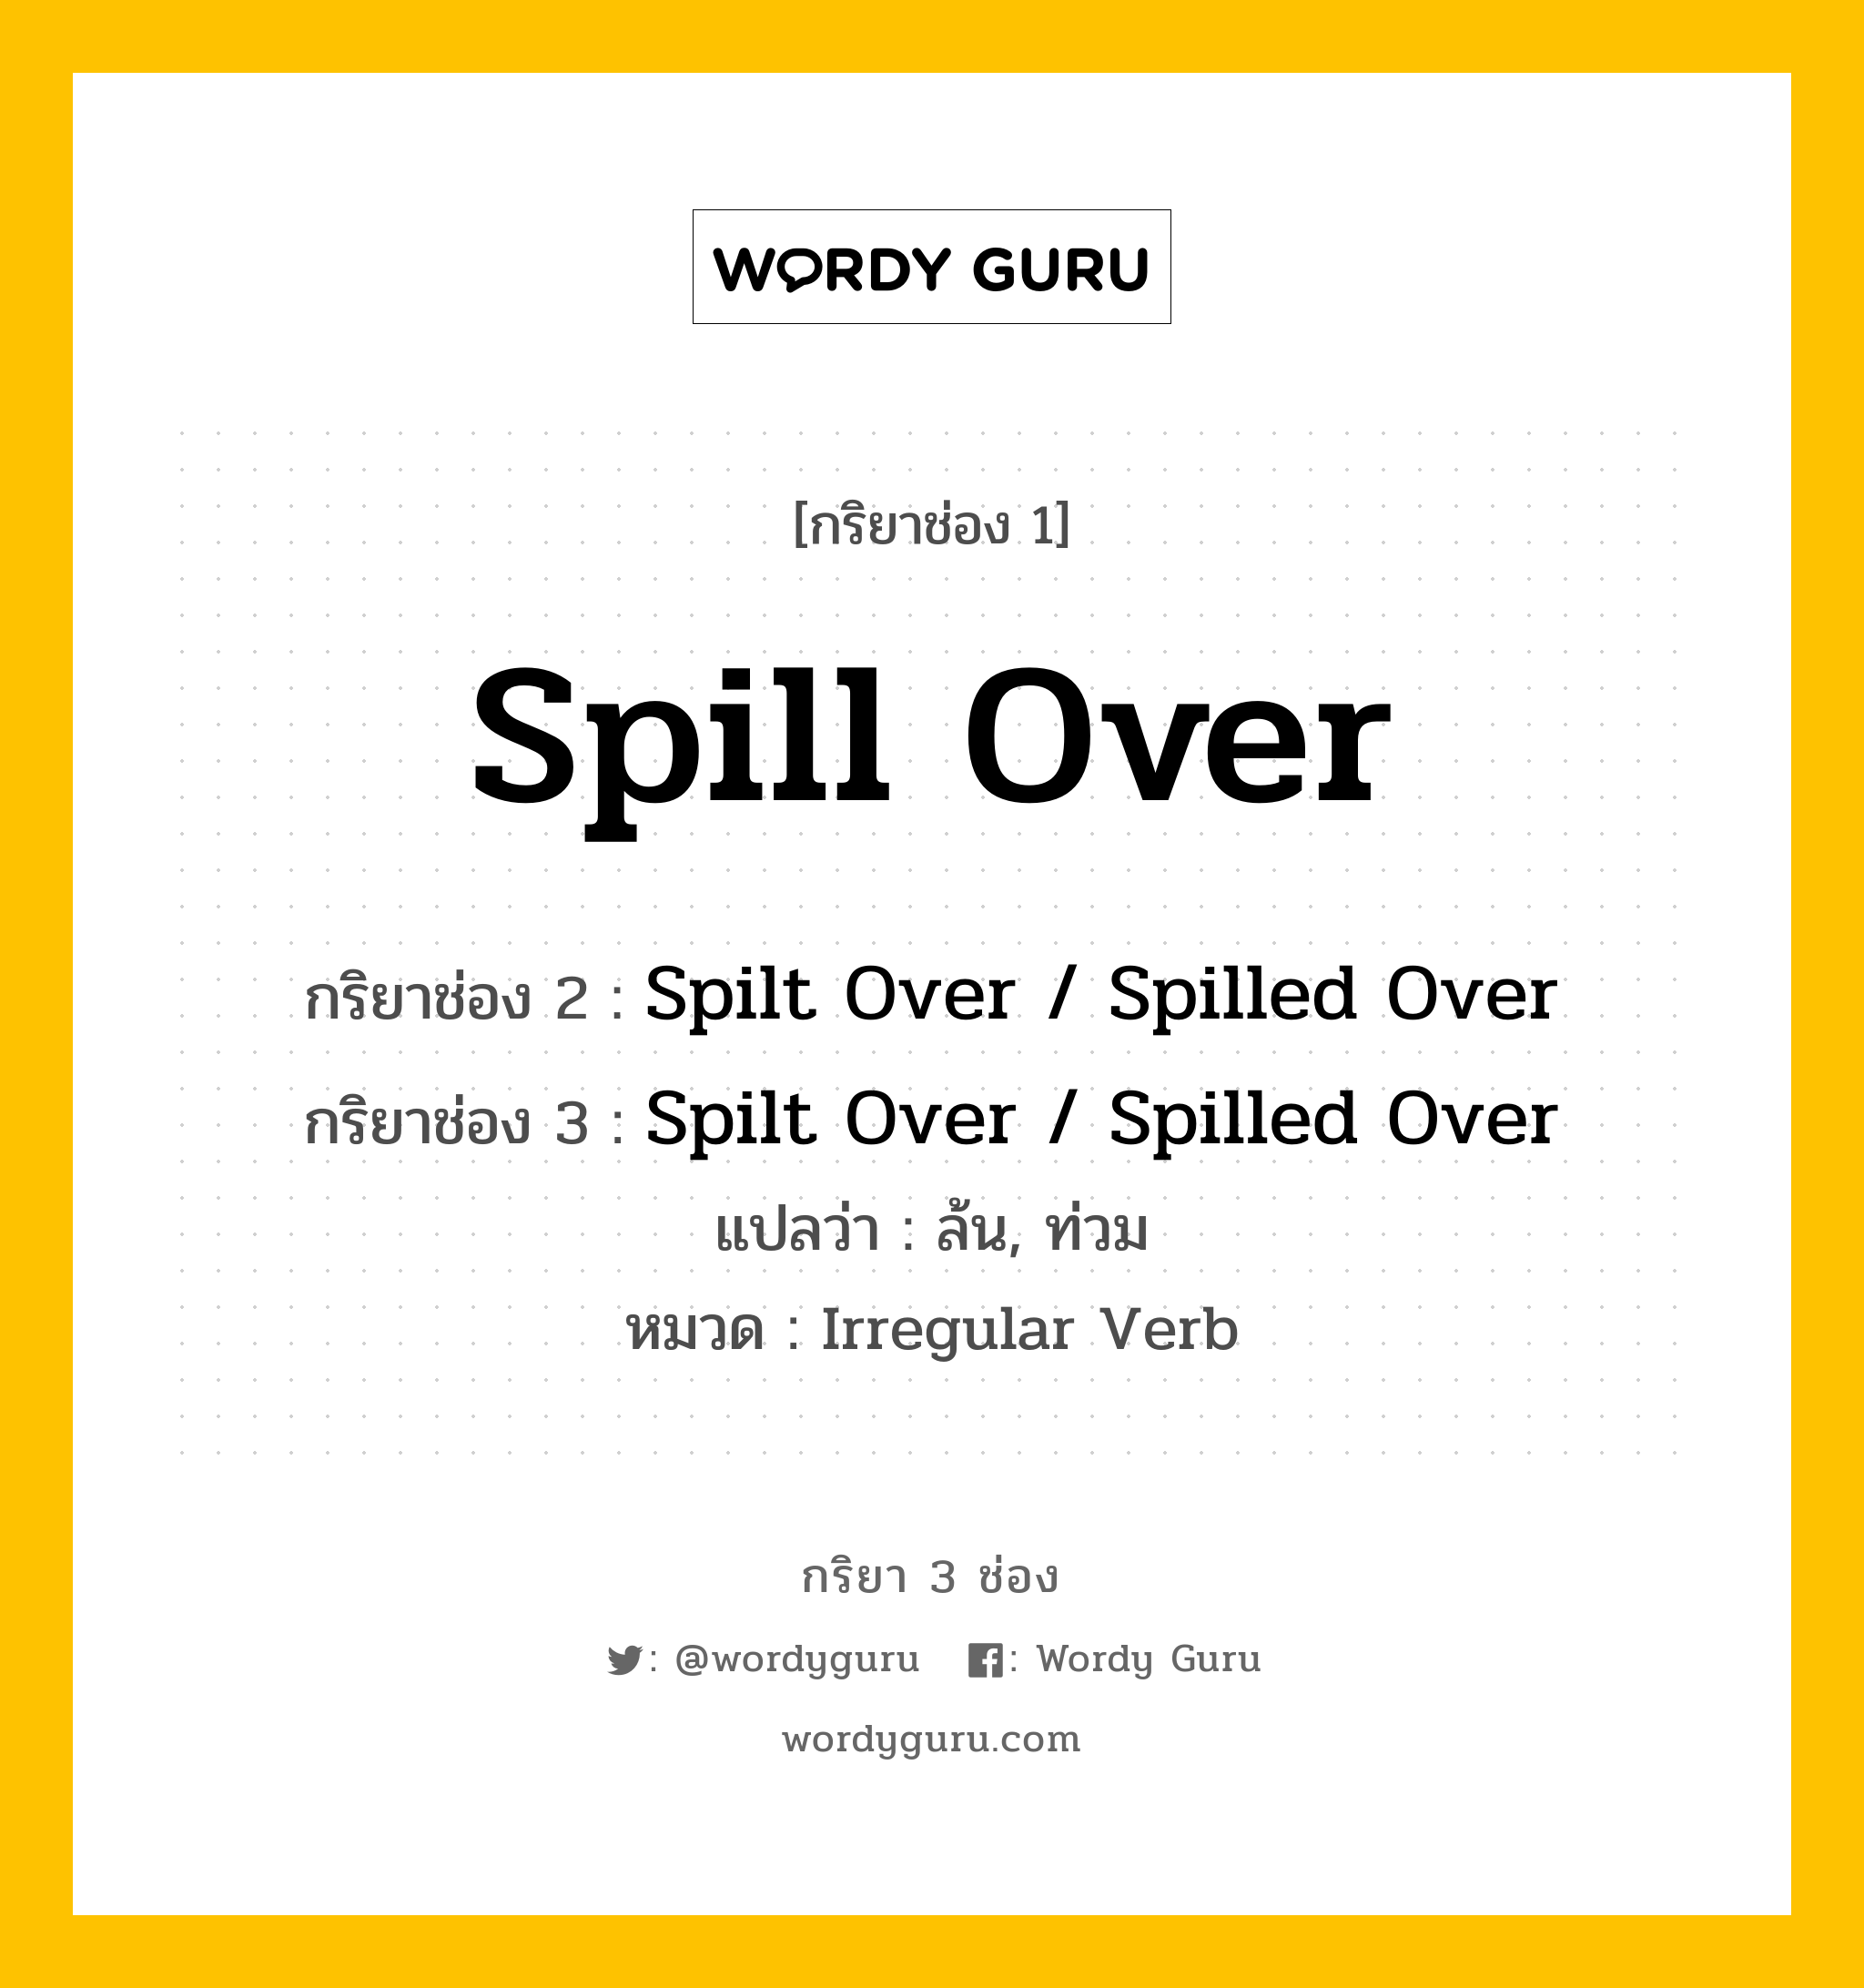 กริยา 3 ช่อง ของ Spill Over คืออะไร? มาดูคำอ่าน คำแปลกันเลย, กริยาช่อง 1 Spill Over กริยาช่อง 2 Spilt Over / Spilled Over กริยาช่อง 3 Spilt Over / Spilled Over แปลว่า ล้น, ท่วม หมวด Irregular Verb หมวด Irregular Verb